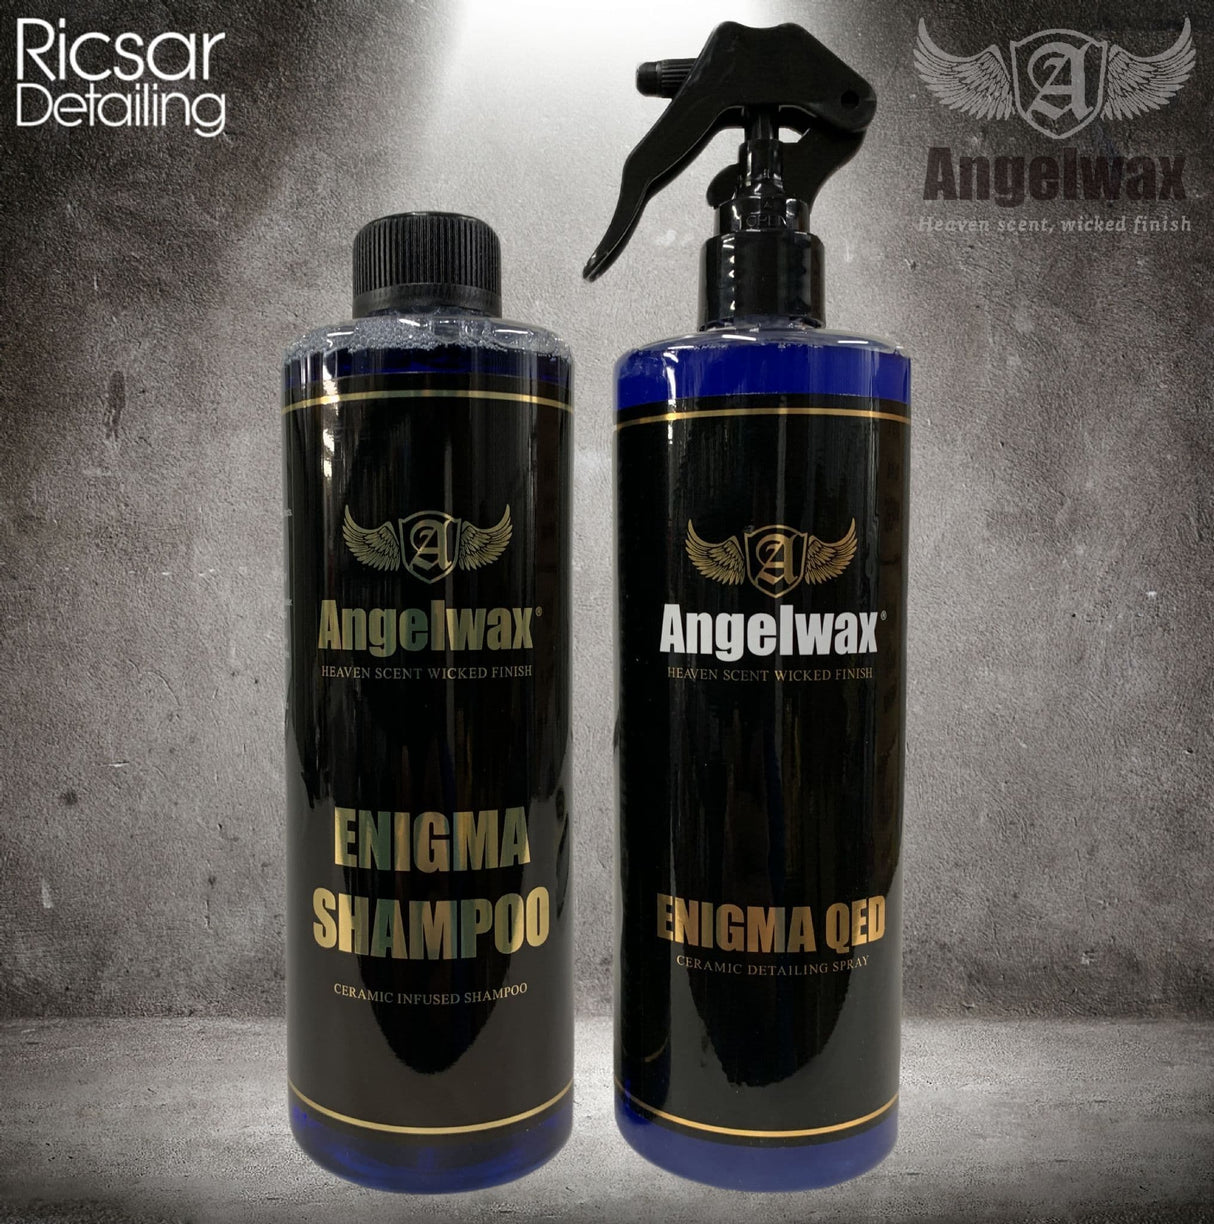 Angelwax Enigma QED & Enigma Shampoo